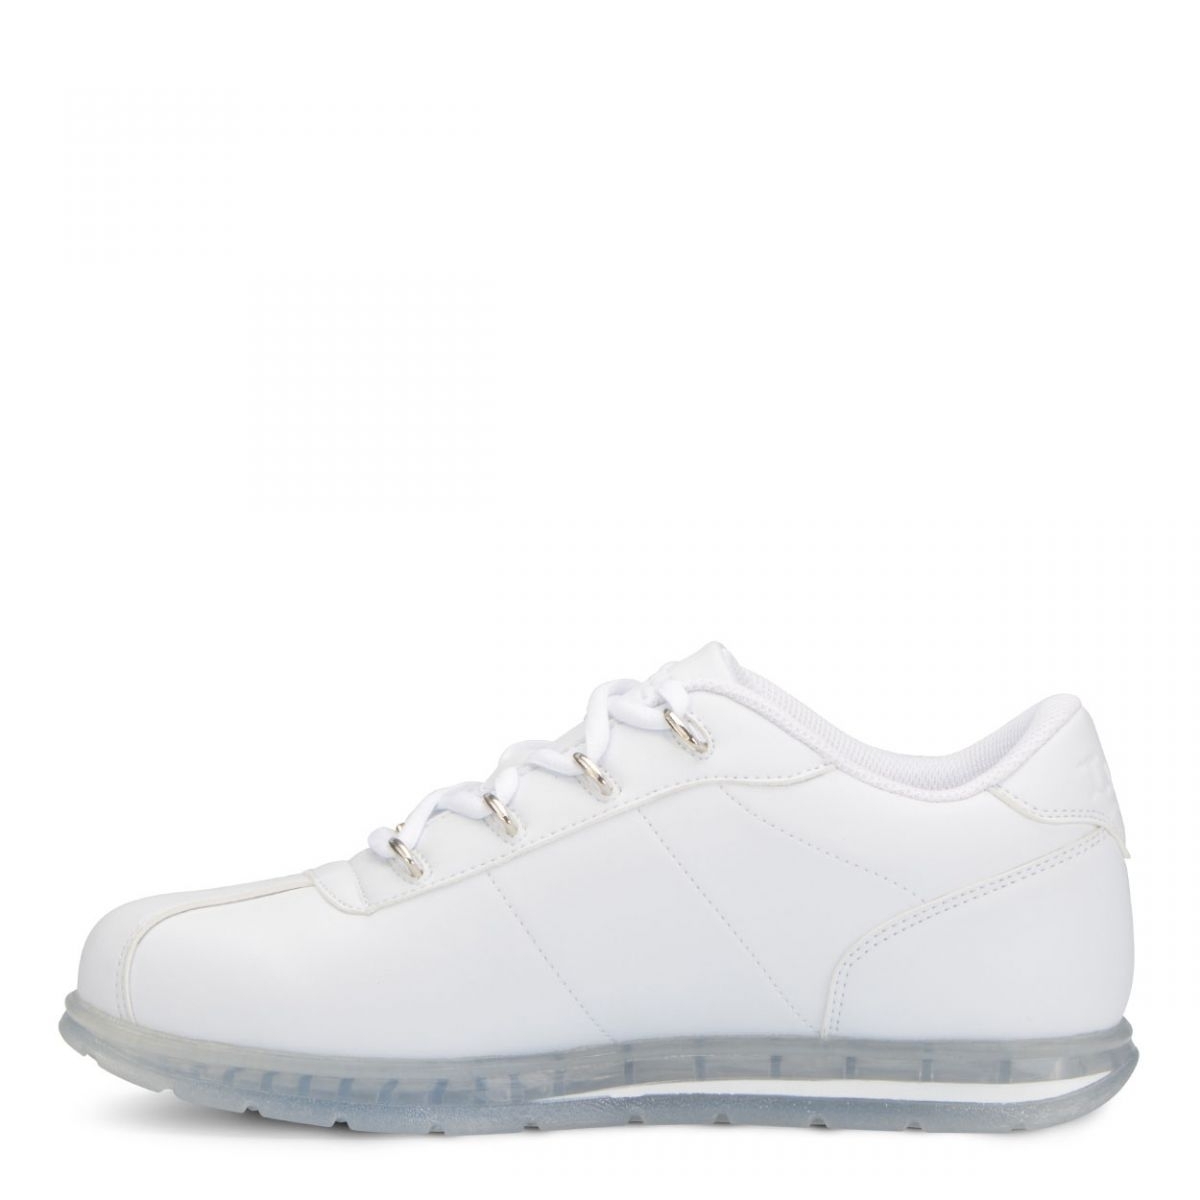 Lugz Men's Zrocs DX Sneaker White/Clear - MZRCIV-1601 White/Clear - White/Clear, 13